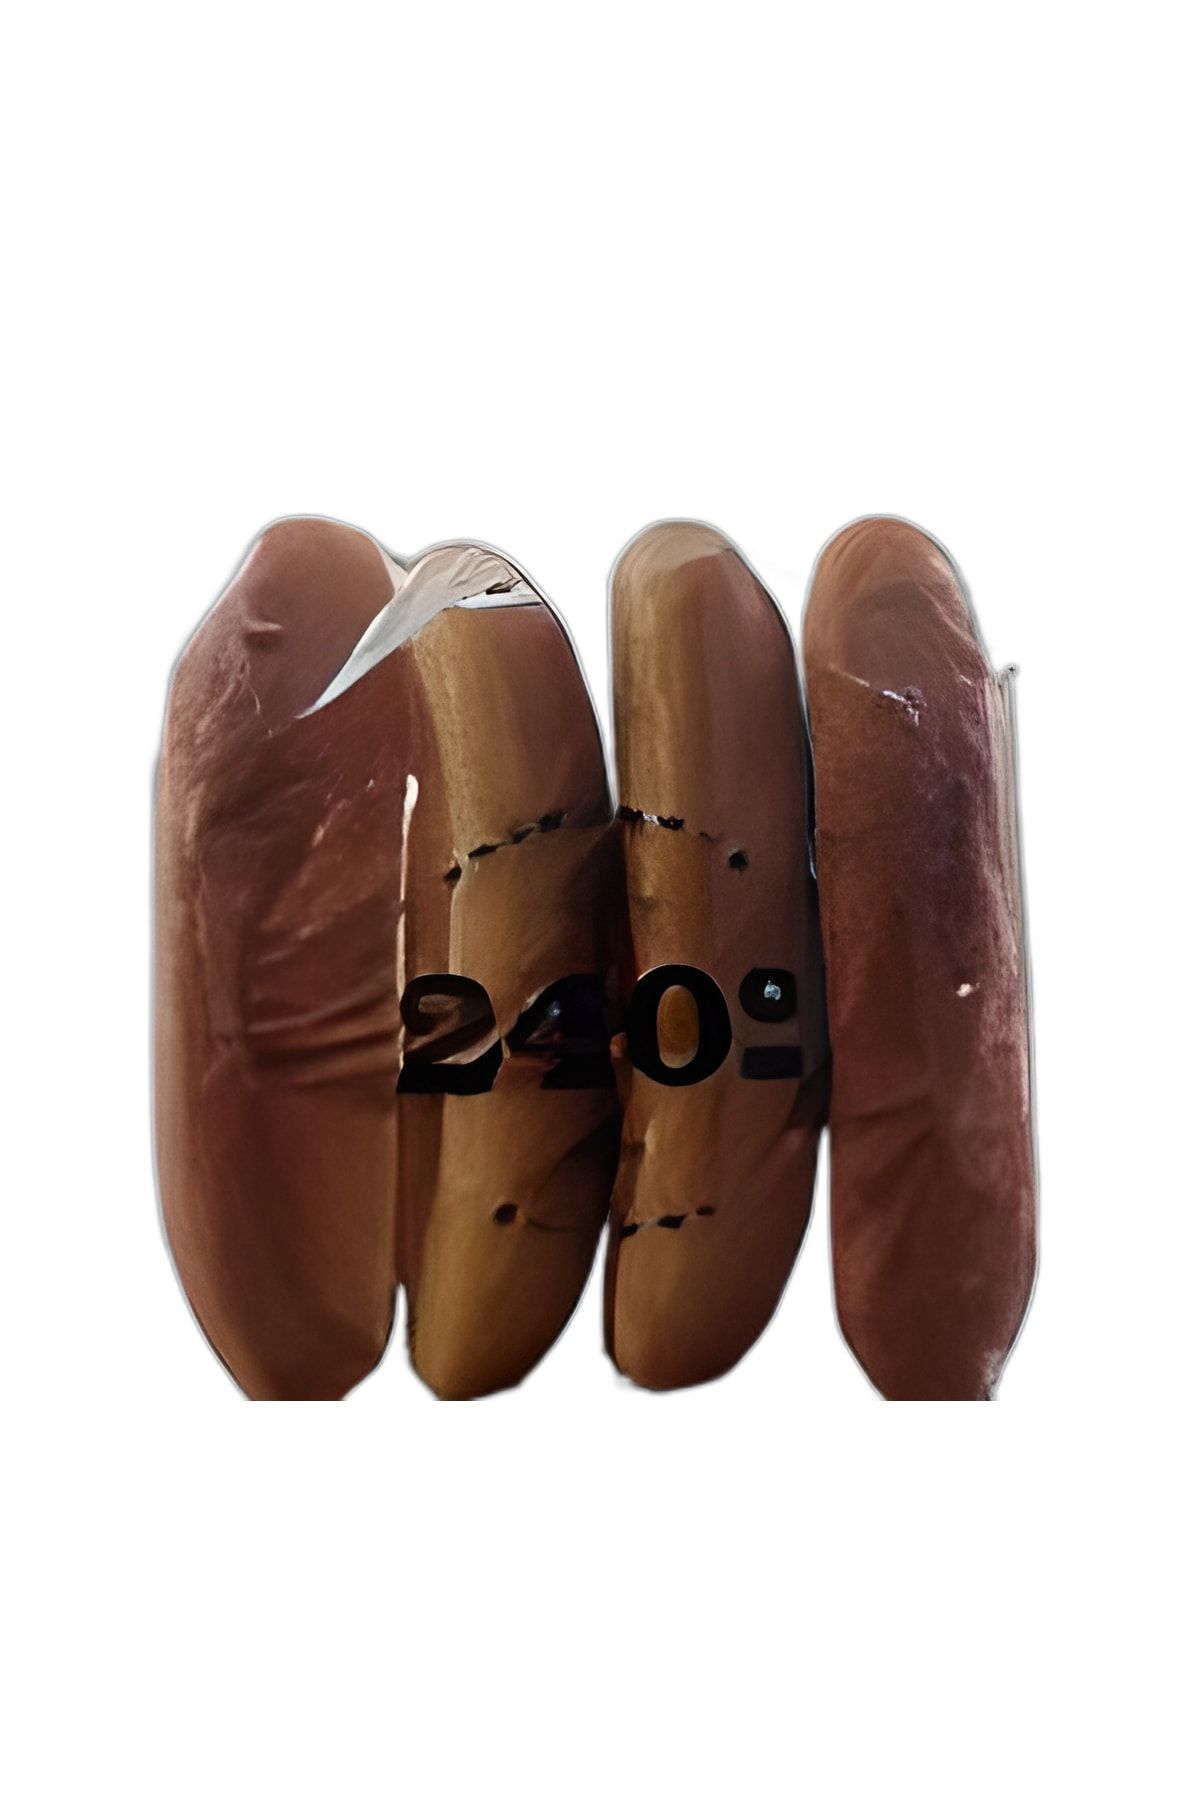 240derece Hotdog Ekmeği 4'lü